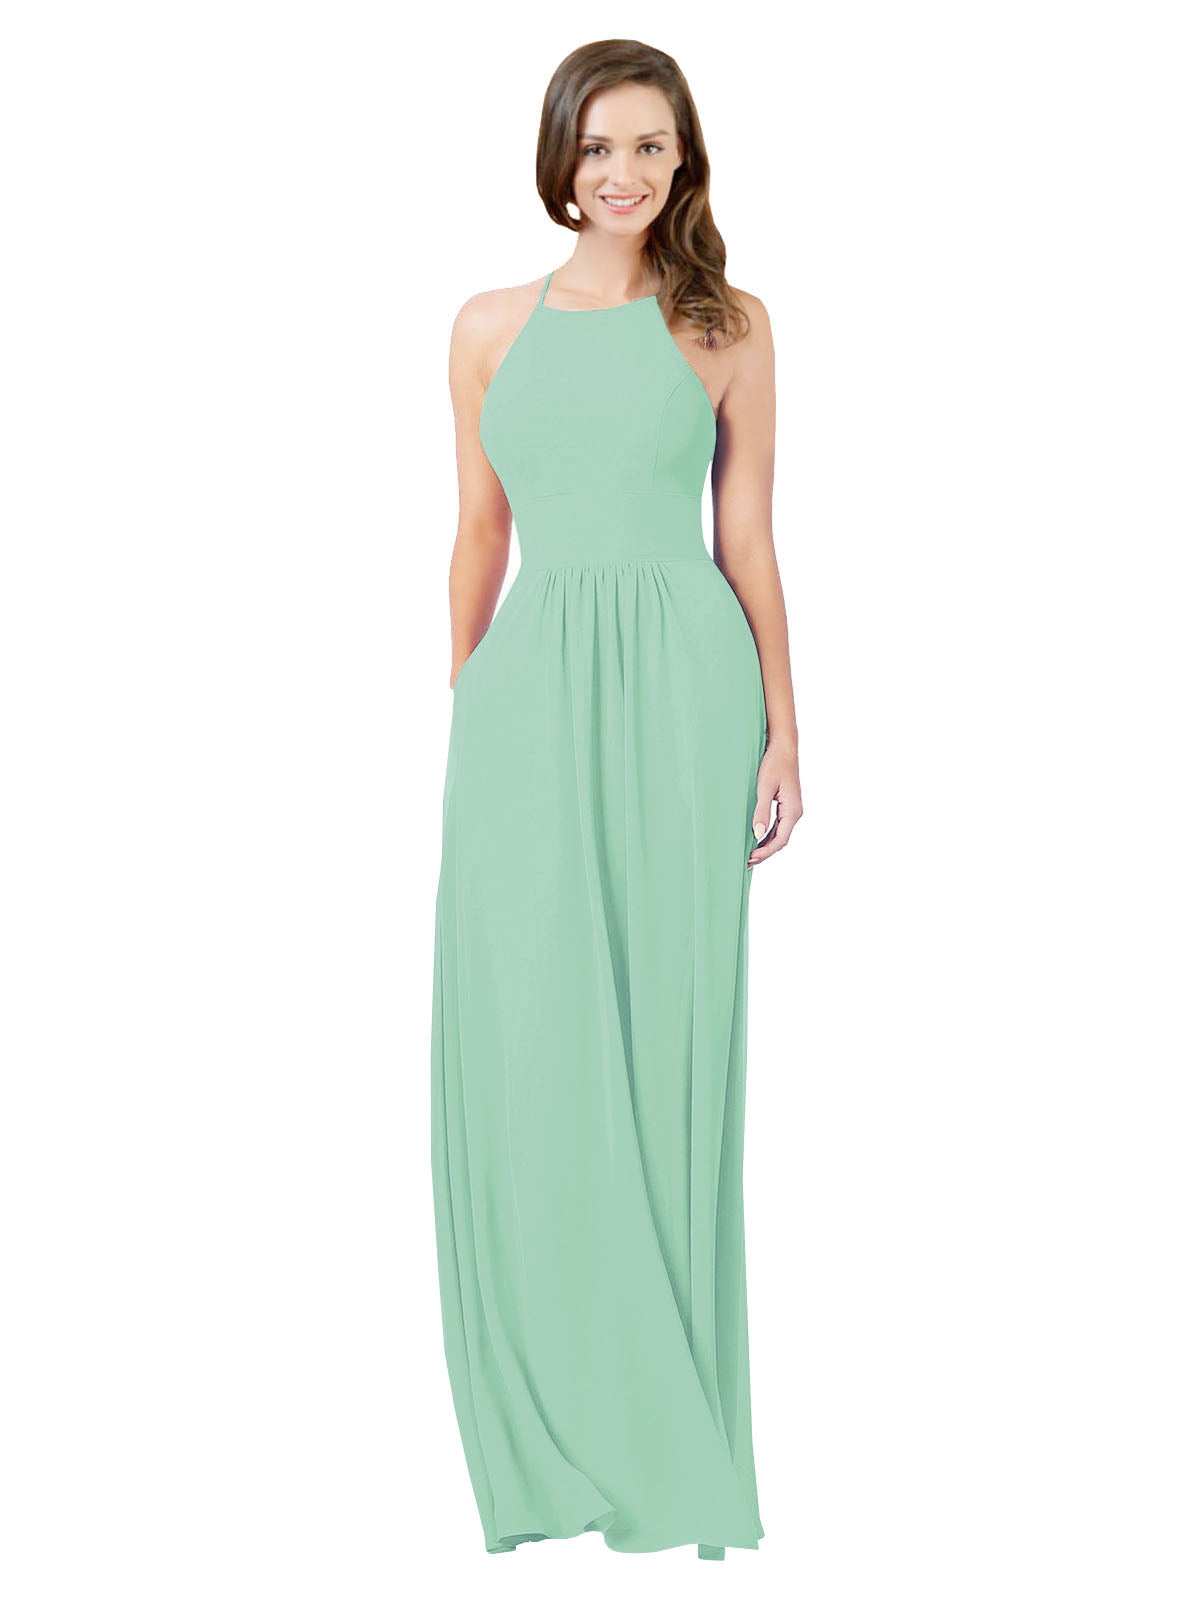 Mint Green A-Line Halter Sleeveless Long Bridesmaid Dress Cindy